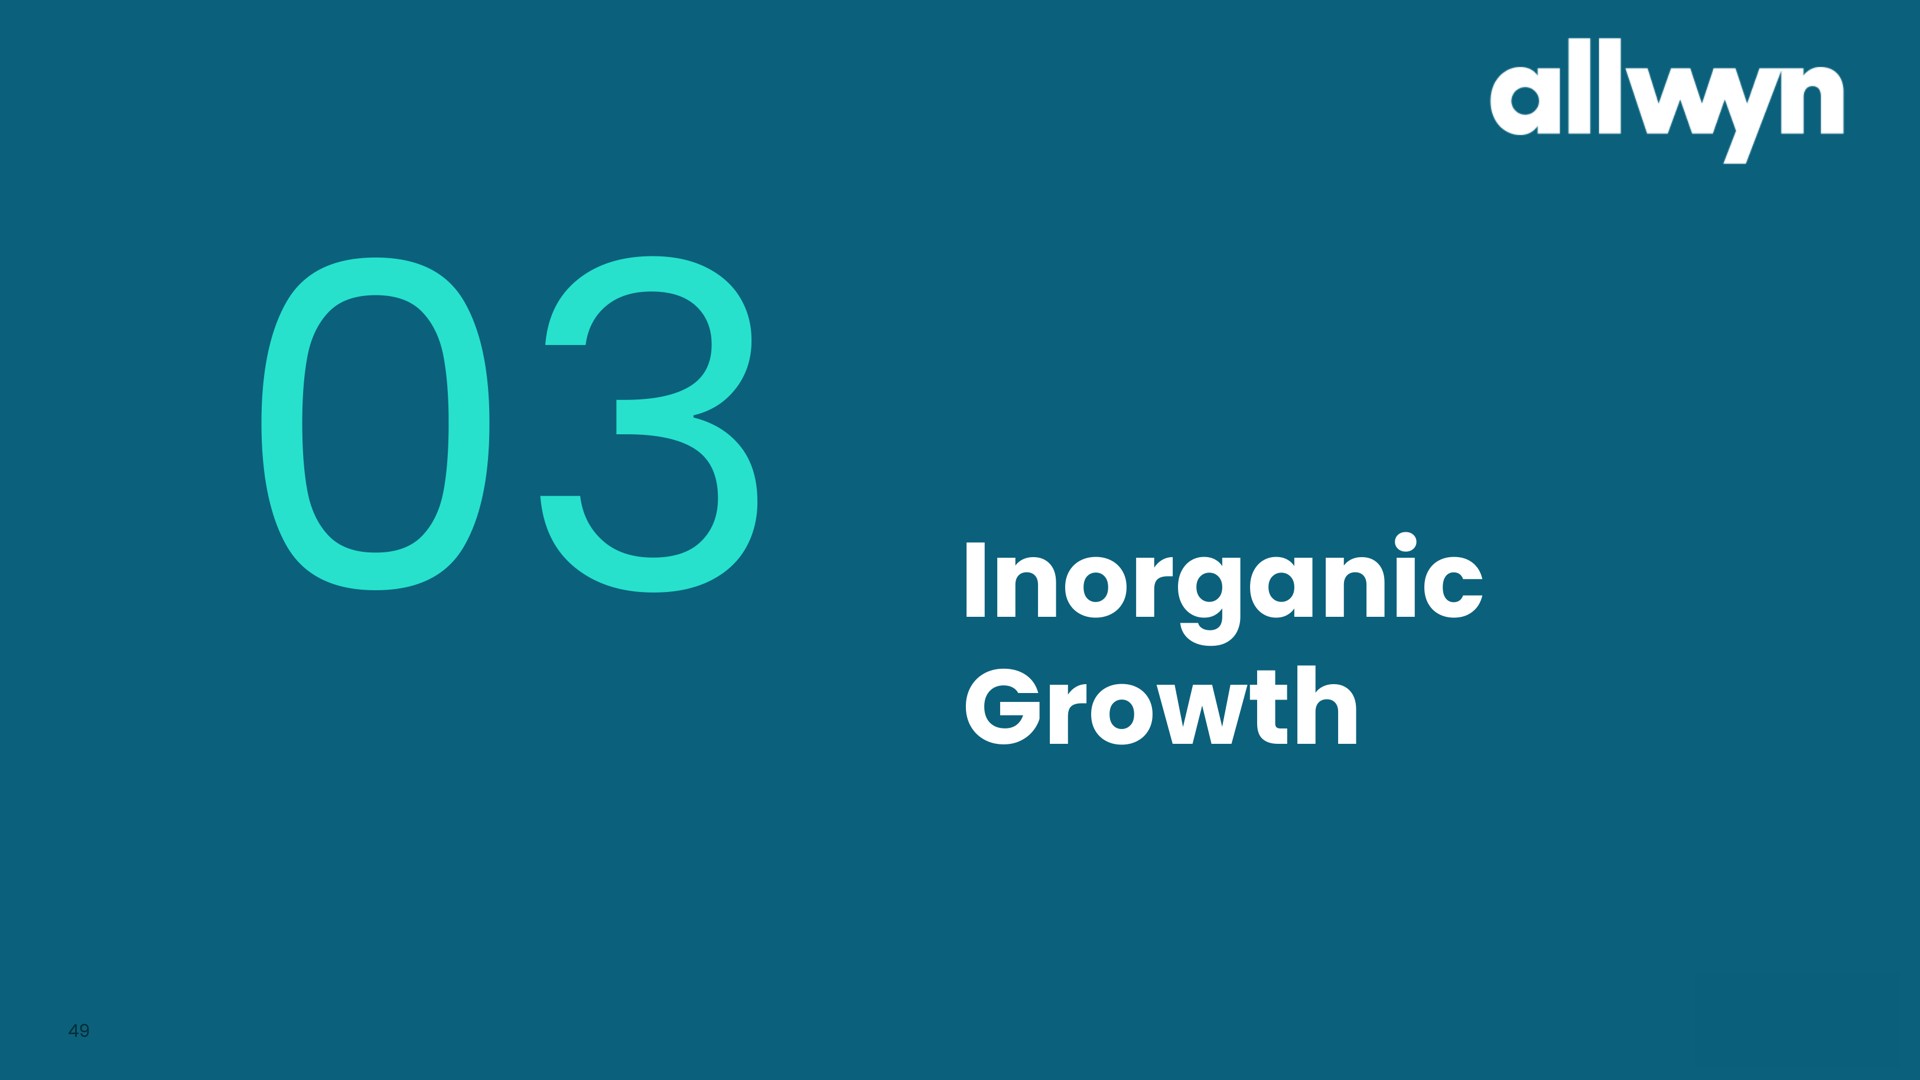 inorganic growth | Allwyn